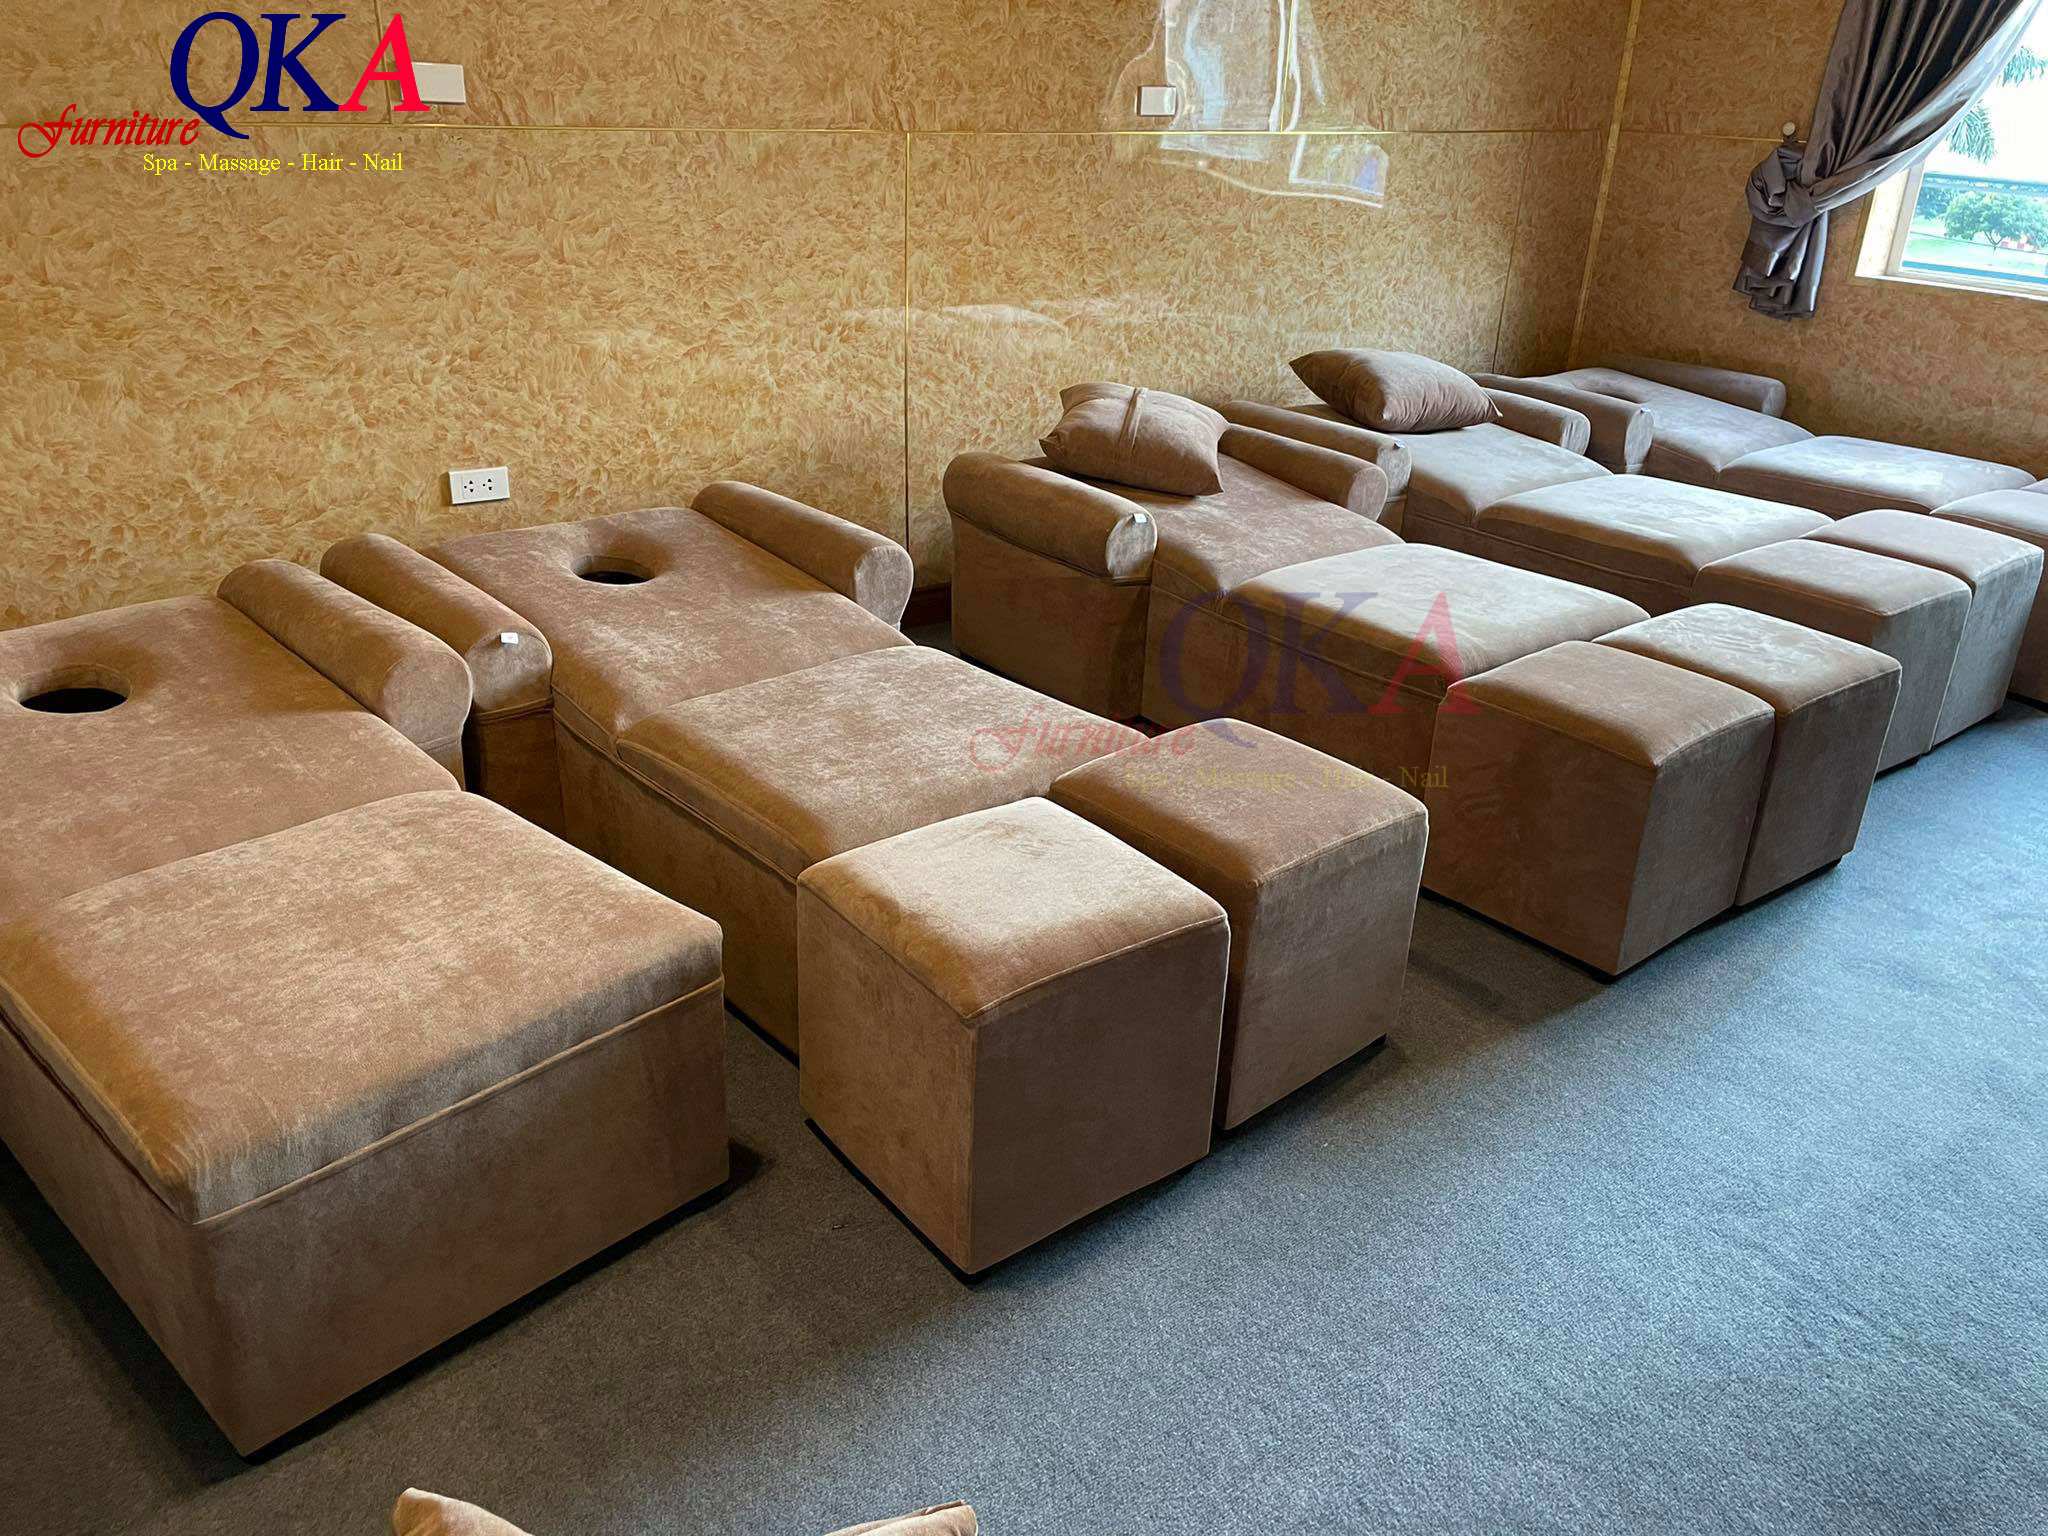 11 Xưởng sản xuất Ghế Massage Chân - Nhận làm ghế foot theo yêu cầu.